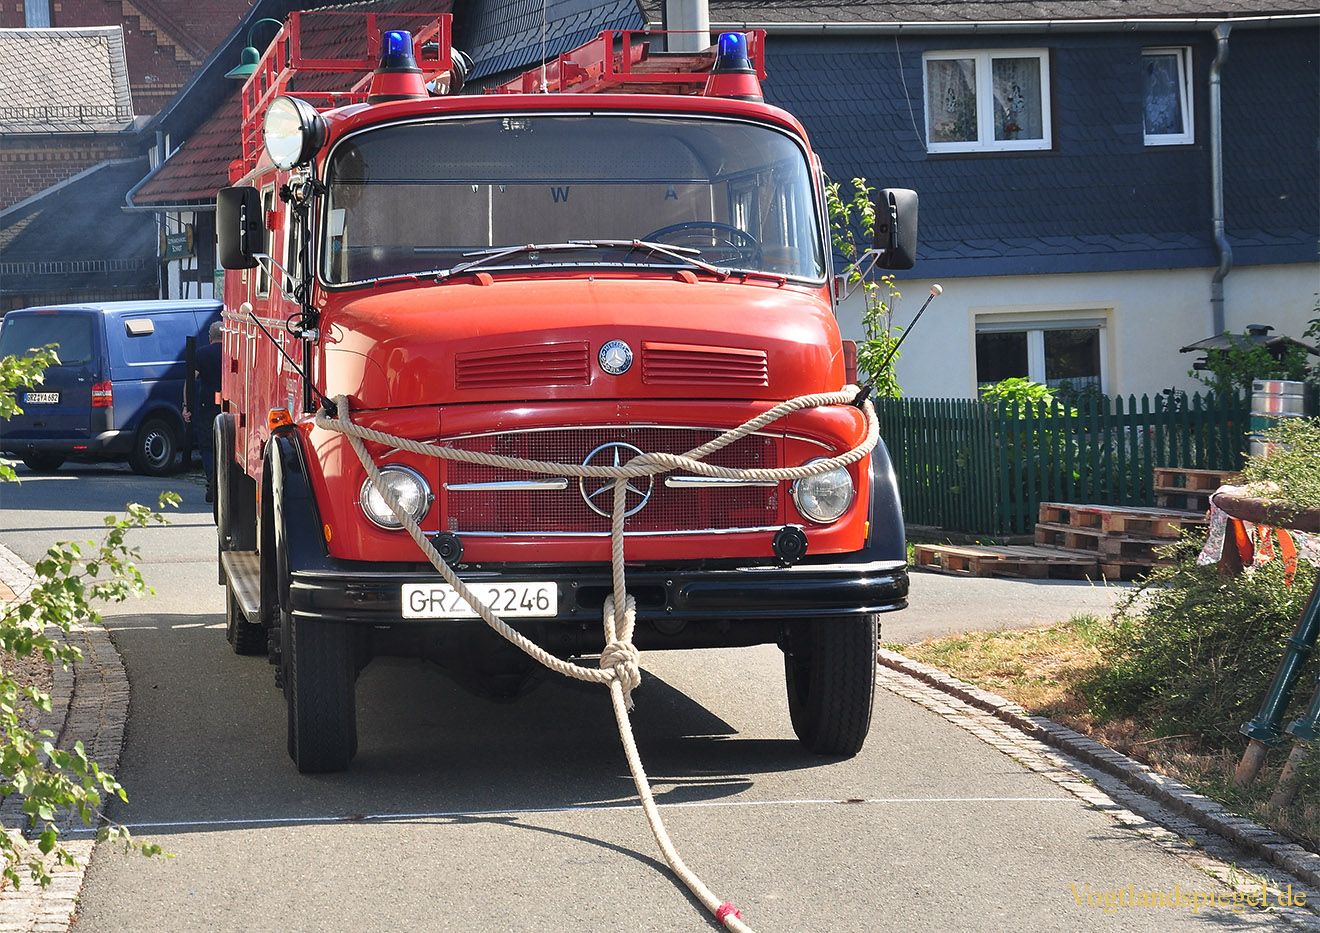 Neugernsdorfer ziehen das Daßlitzer Feuerwehrauto am weitesten